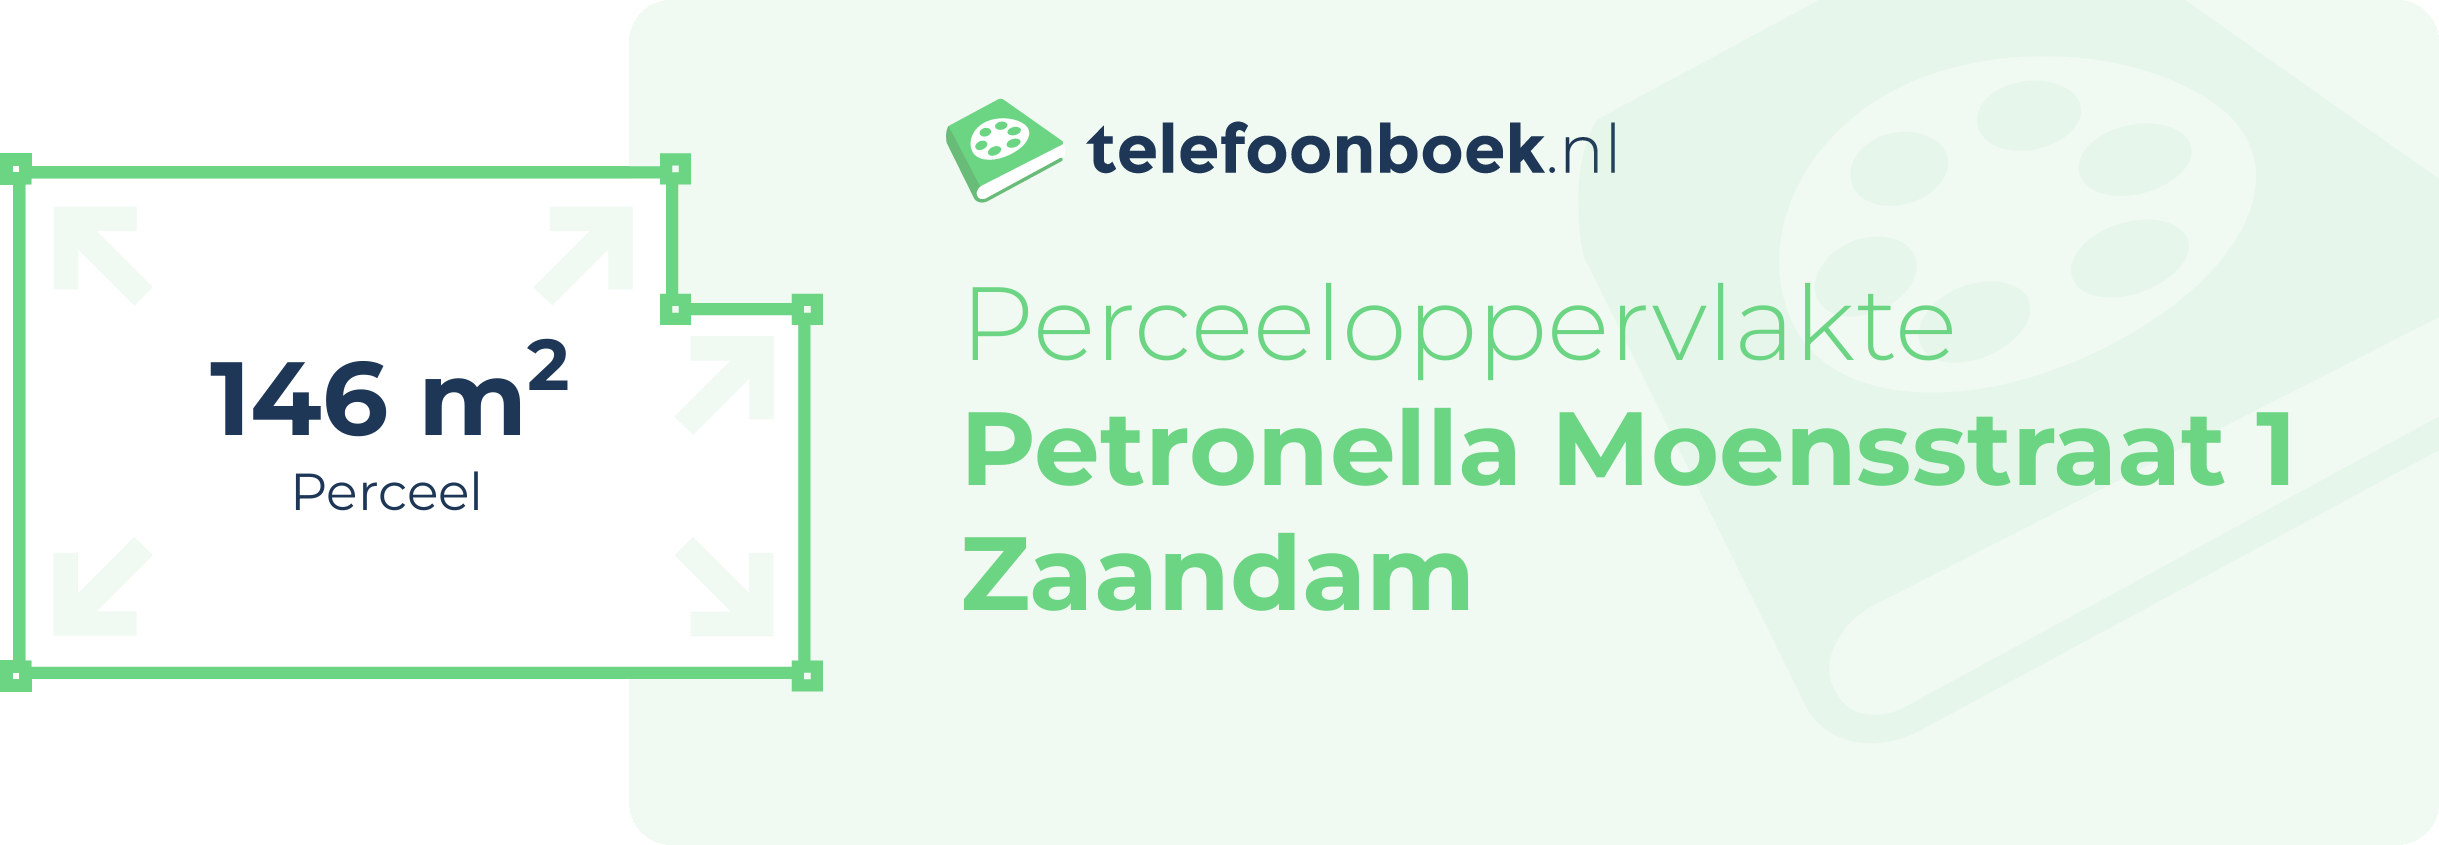 Perceeloppervlakte Petronella Moensstraat 1 Zaandam